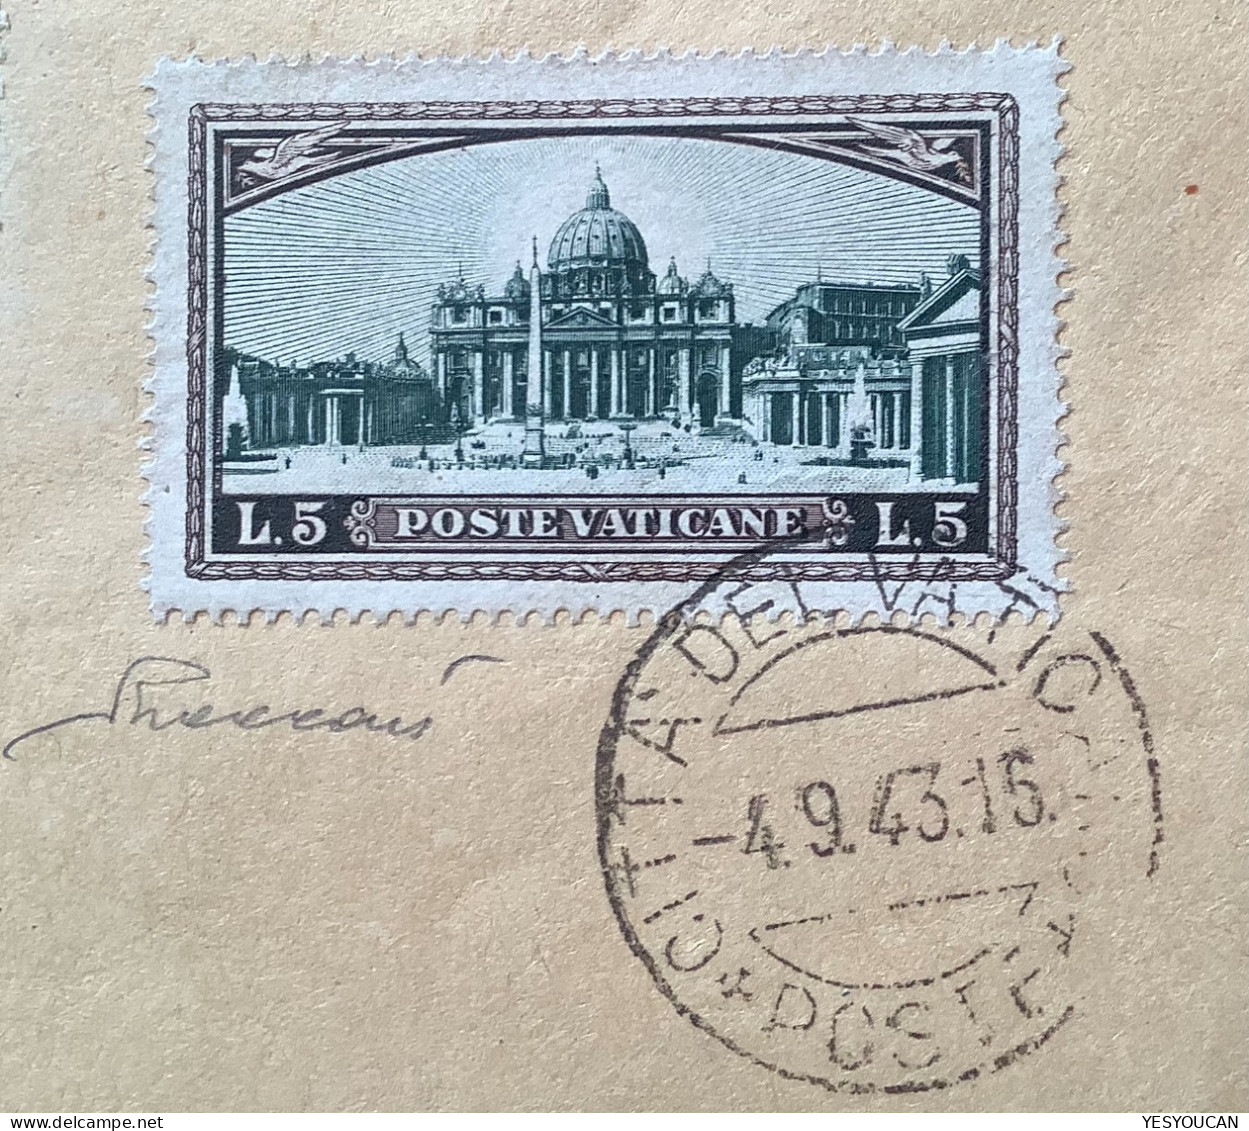 Sa.32 1933 5L 1943 Lettera EXPRÈS (Vatican Vaticano Cover Espresso Italia Italy Express Vaccari - Brieven En Documenten